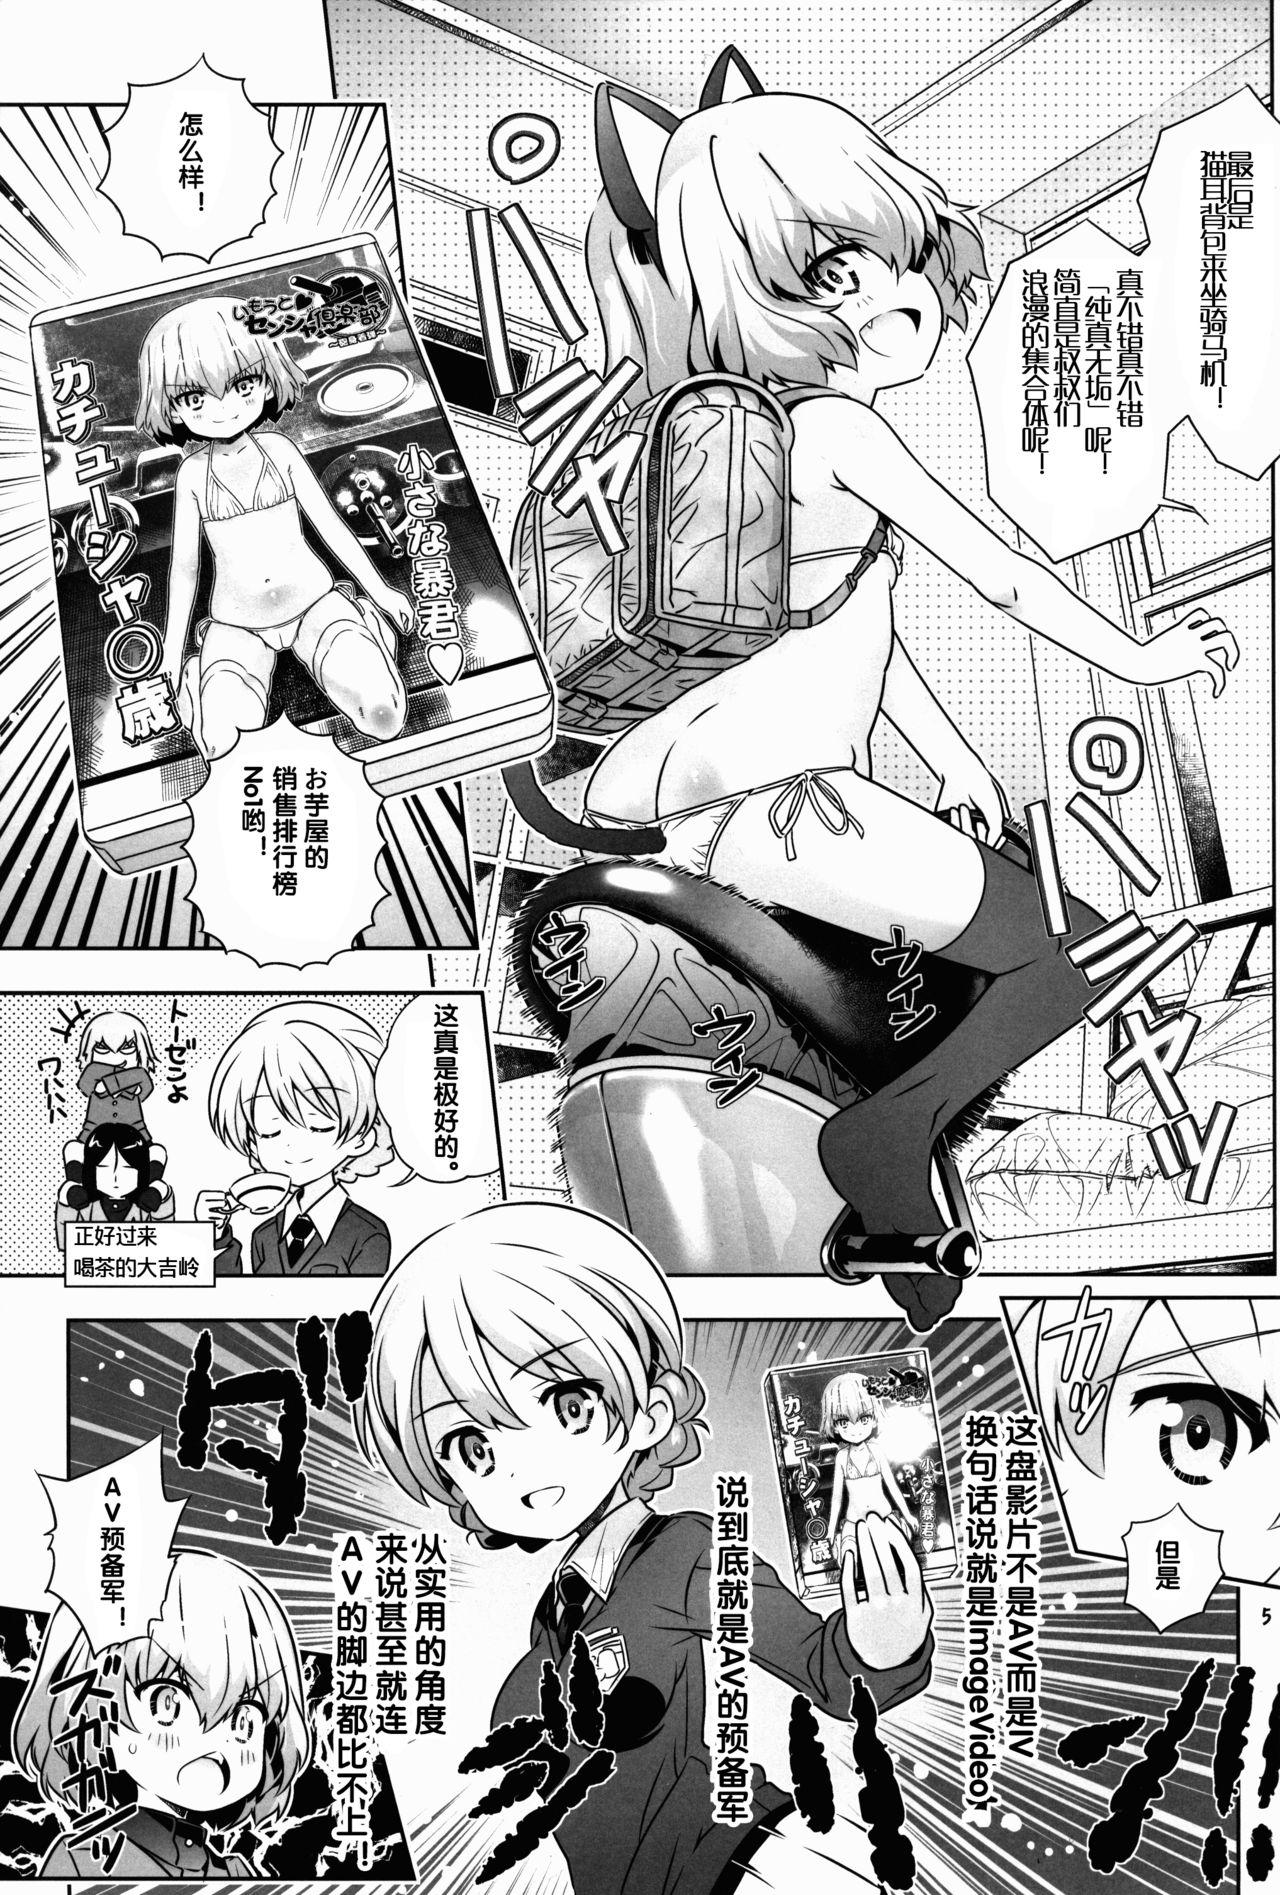 Dirty Talk "AV Shutsuen, Ganbarimasu!?" Tsugi wa Enkou desu!! - Girls und panzer Duro - Page 5